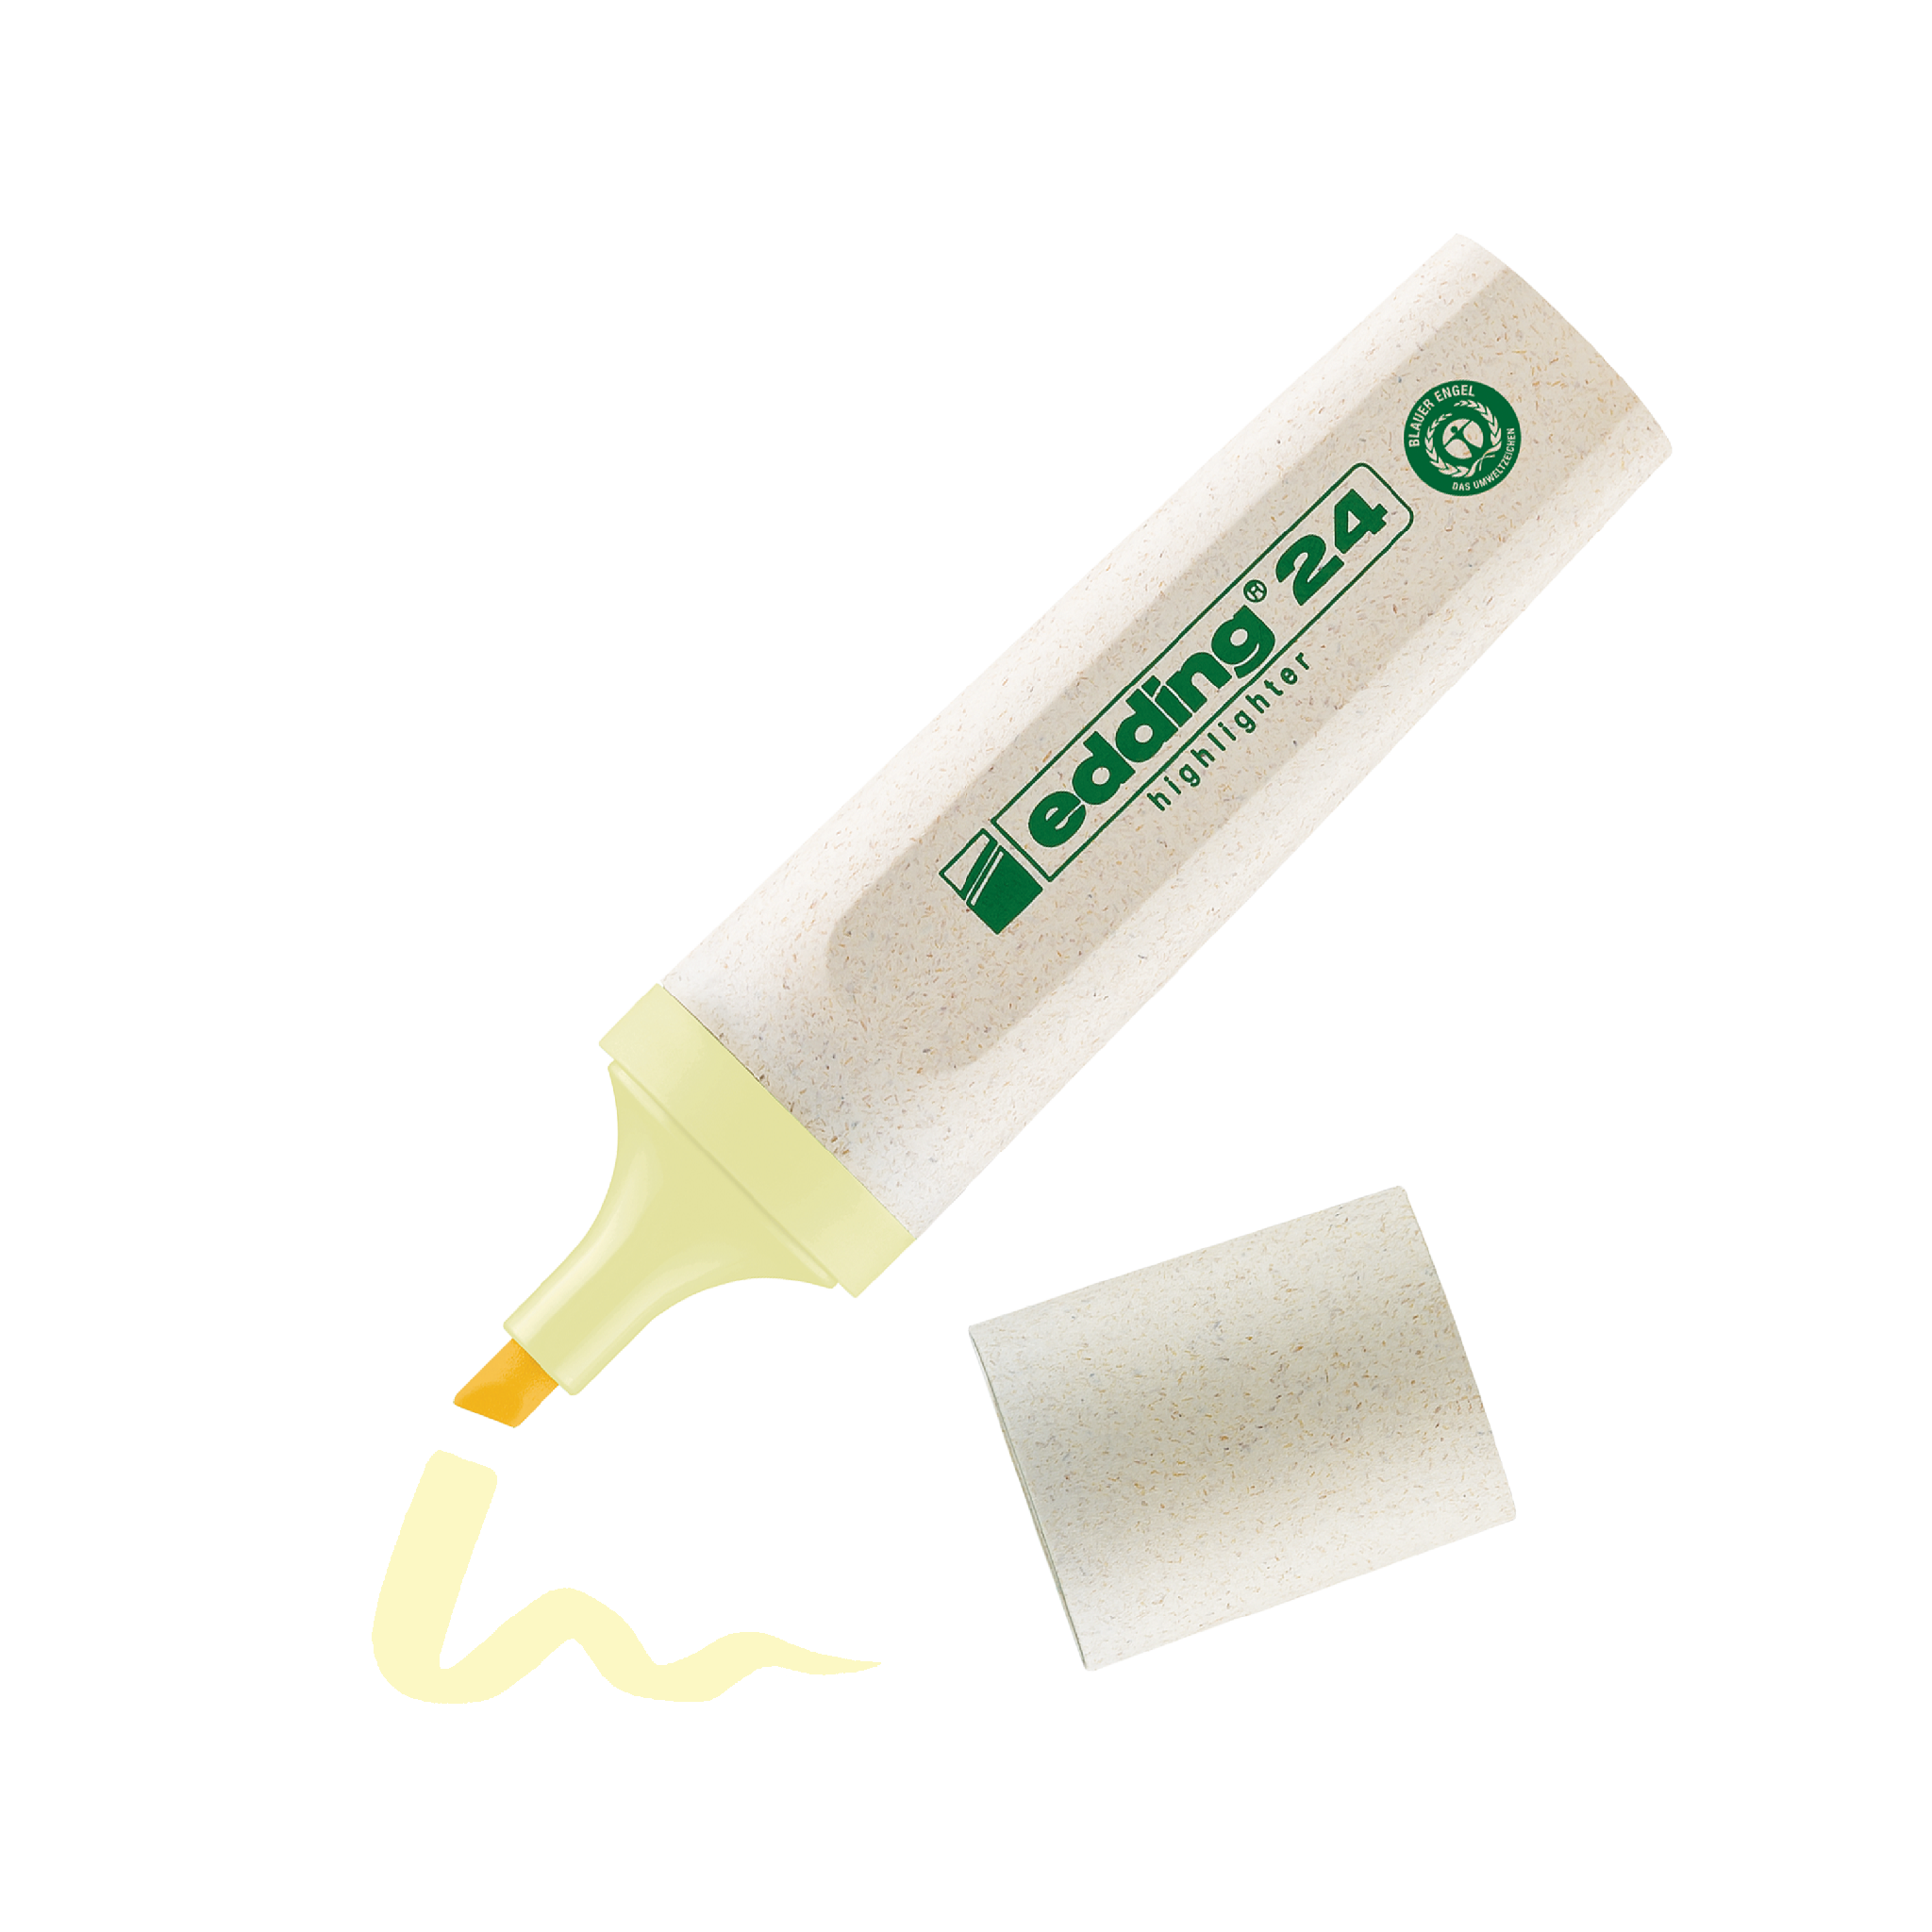 Ein umweltfreundlicher edding 24 EcoLine Textmarker, indem edding mit abgenommener Kappe und einer kleinen Menge Kleber auf eine Fläche daneben aufgetragen wird.